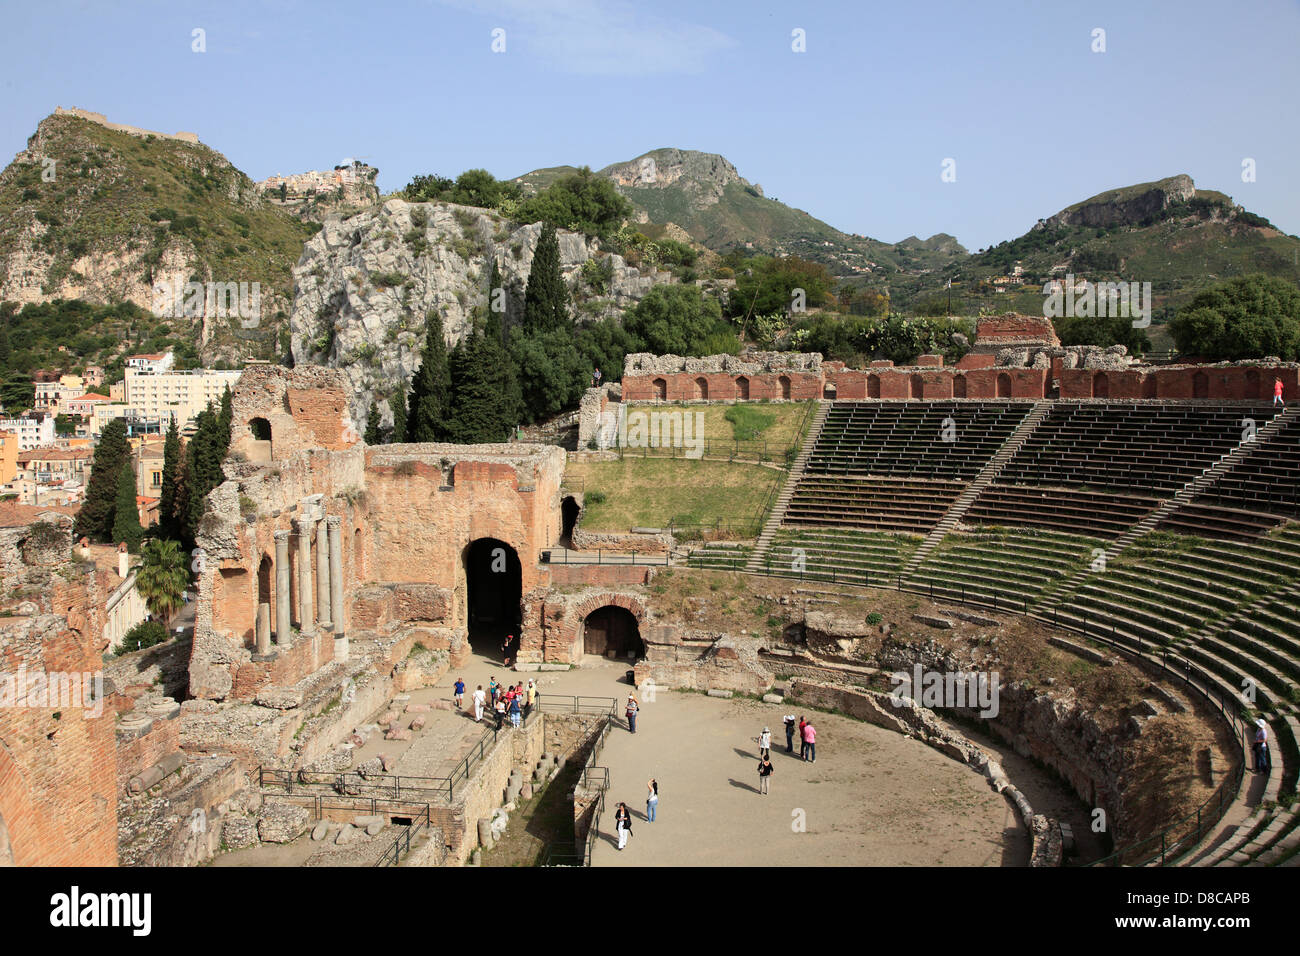 Italia, Sicilia, Taormina, el Teatro Griego, el castillo sarraceno, personas Foto de stock